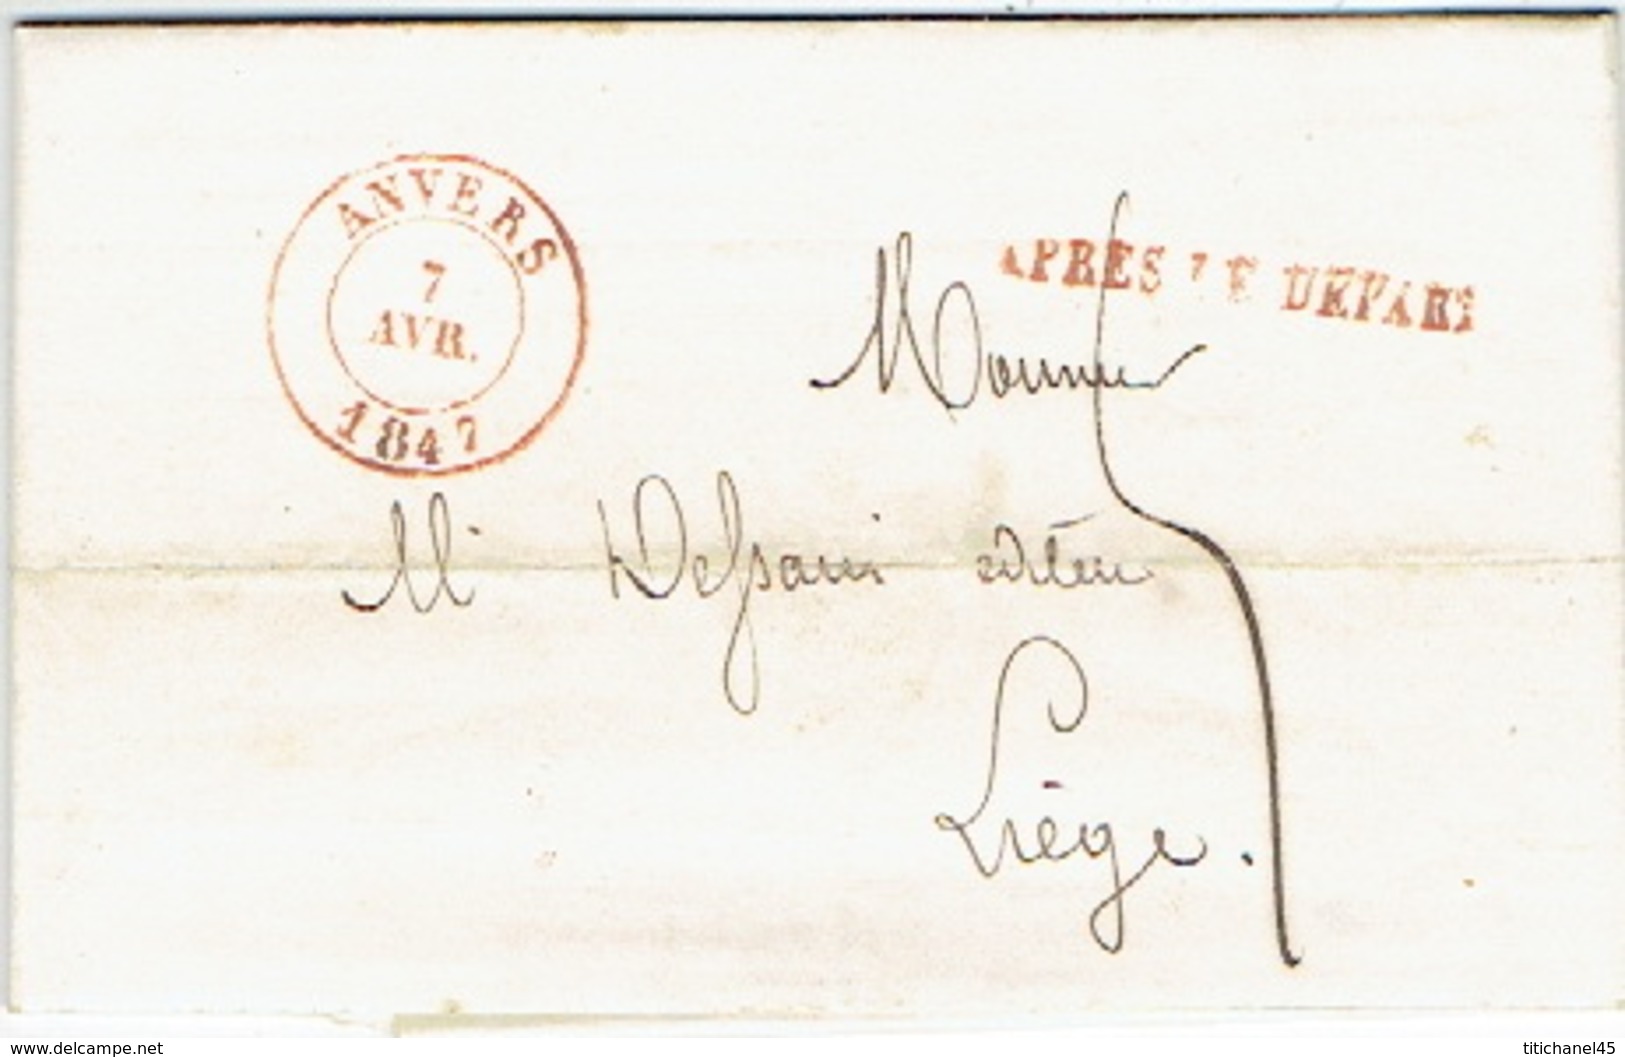 LAC D'ANVERS Datée Du 15 Juin 1847 Vers LIEGE + Griffe "APRES LE DEPART" - Lettre Signée M. ANCELLE - 1830-1849 (Independent Belgium)